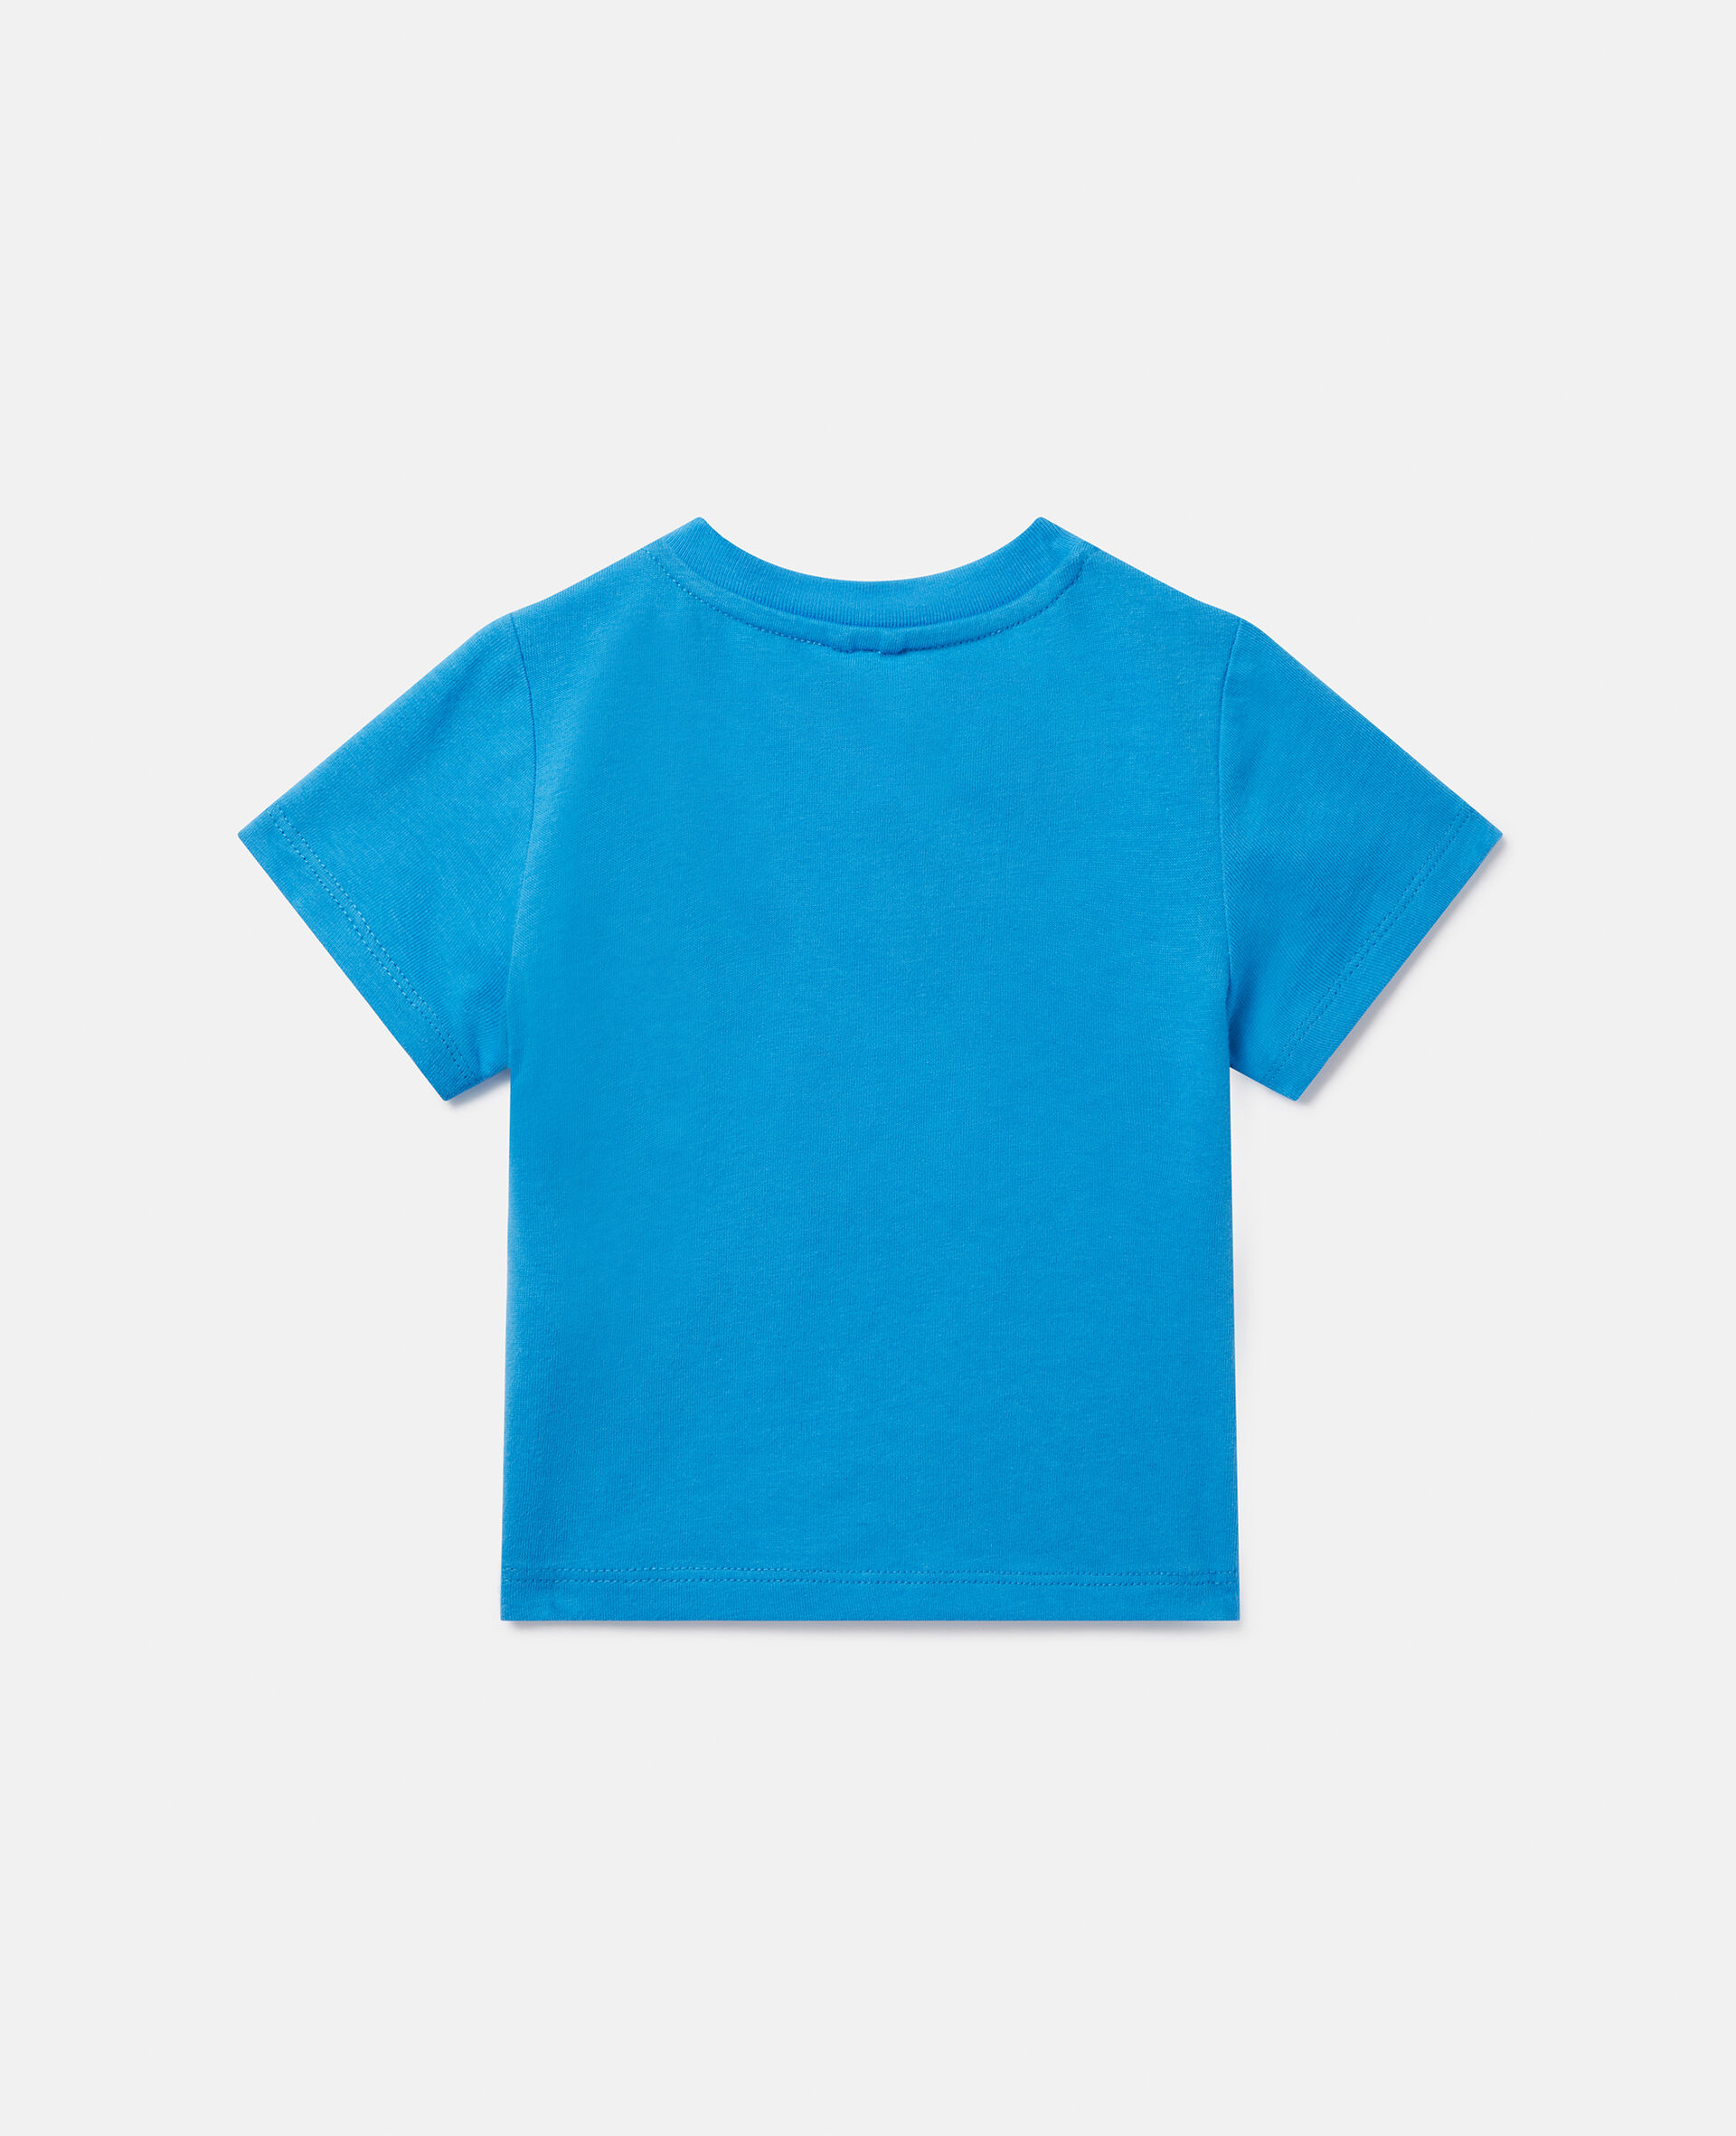 ダブルベビーパロットプリント Tシャツ-ブルー-large image number 2